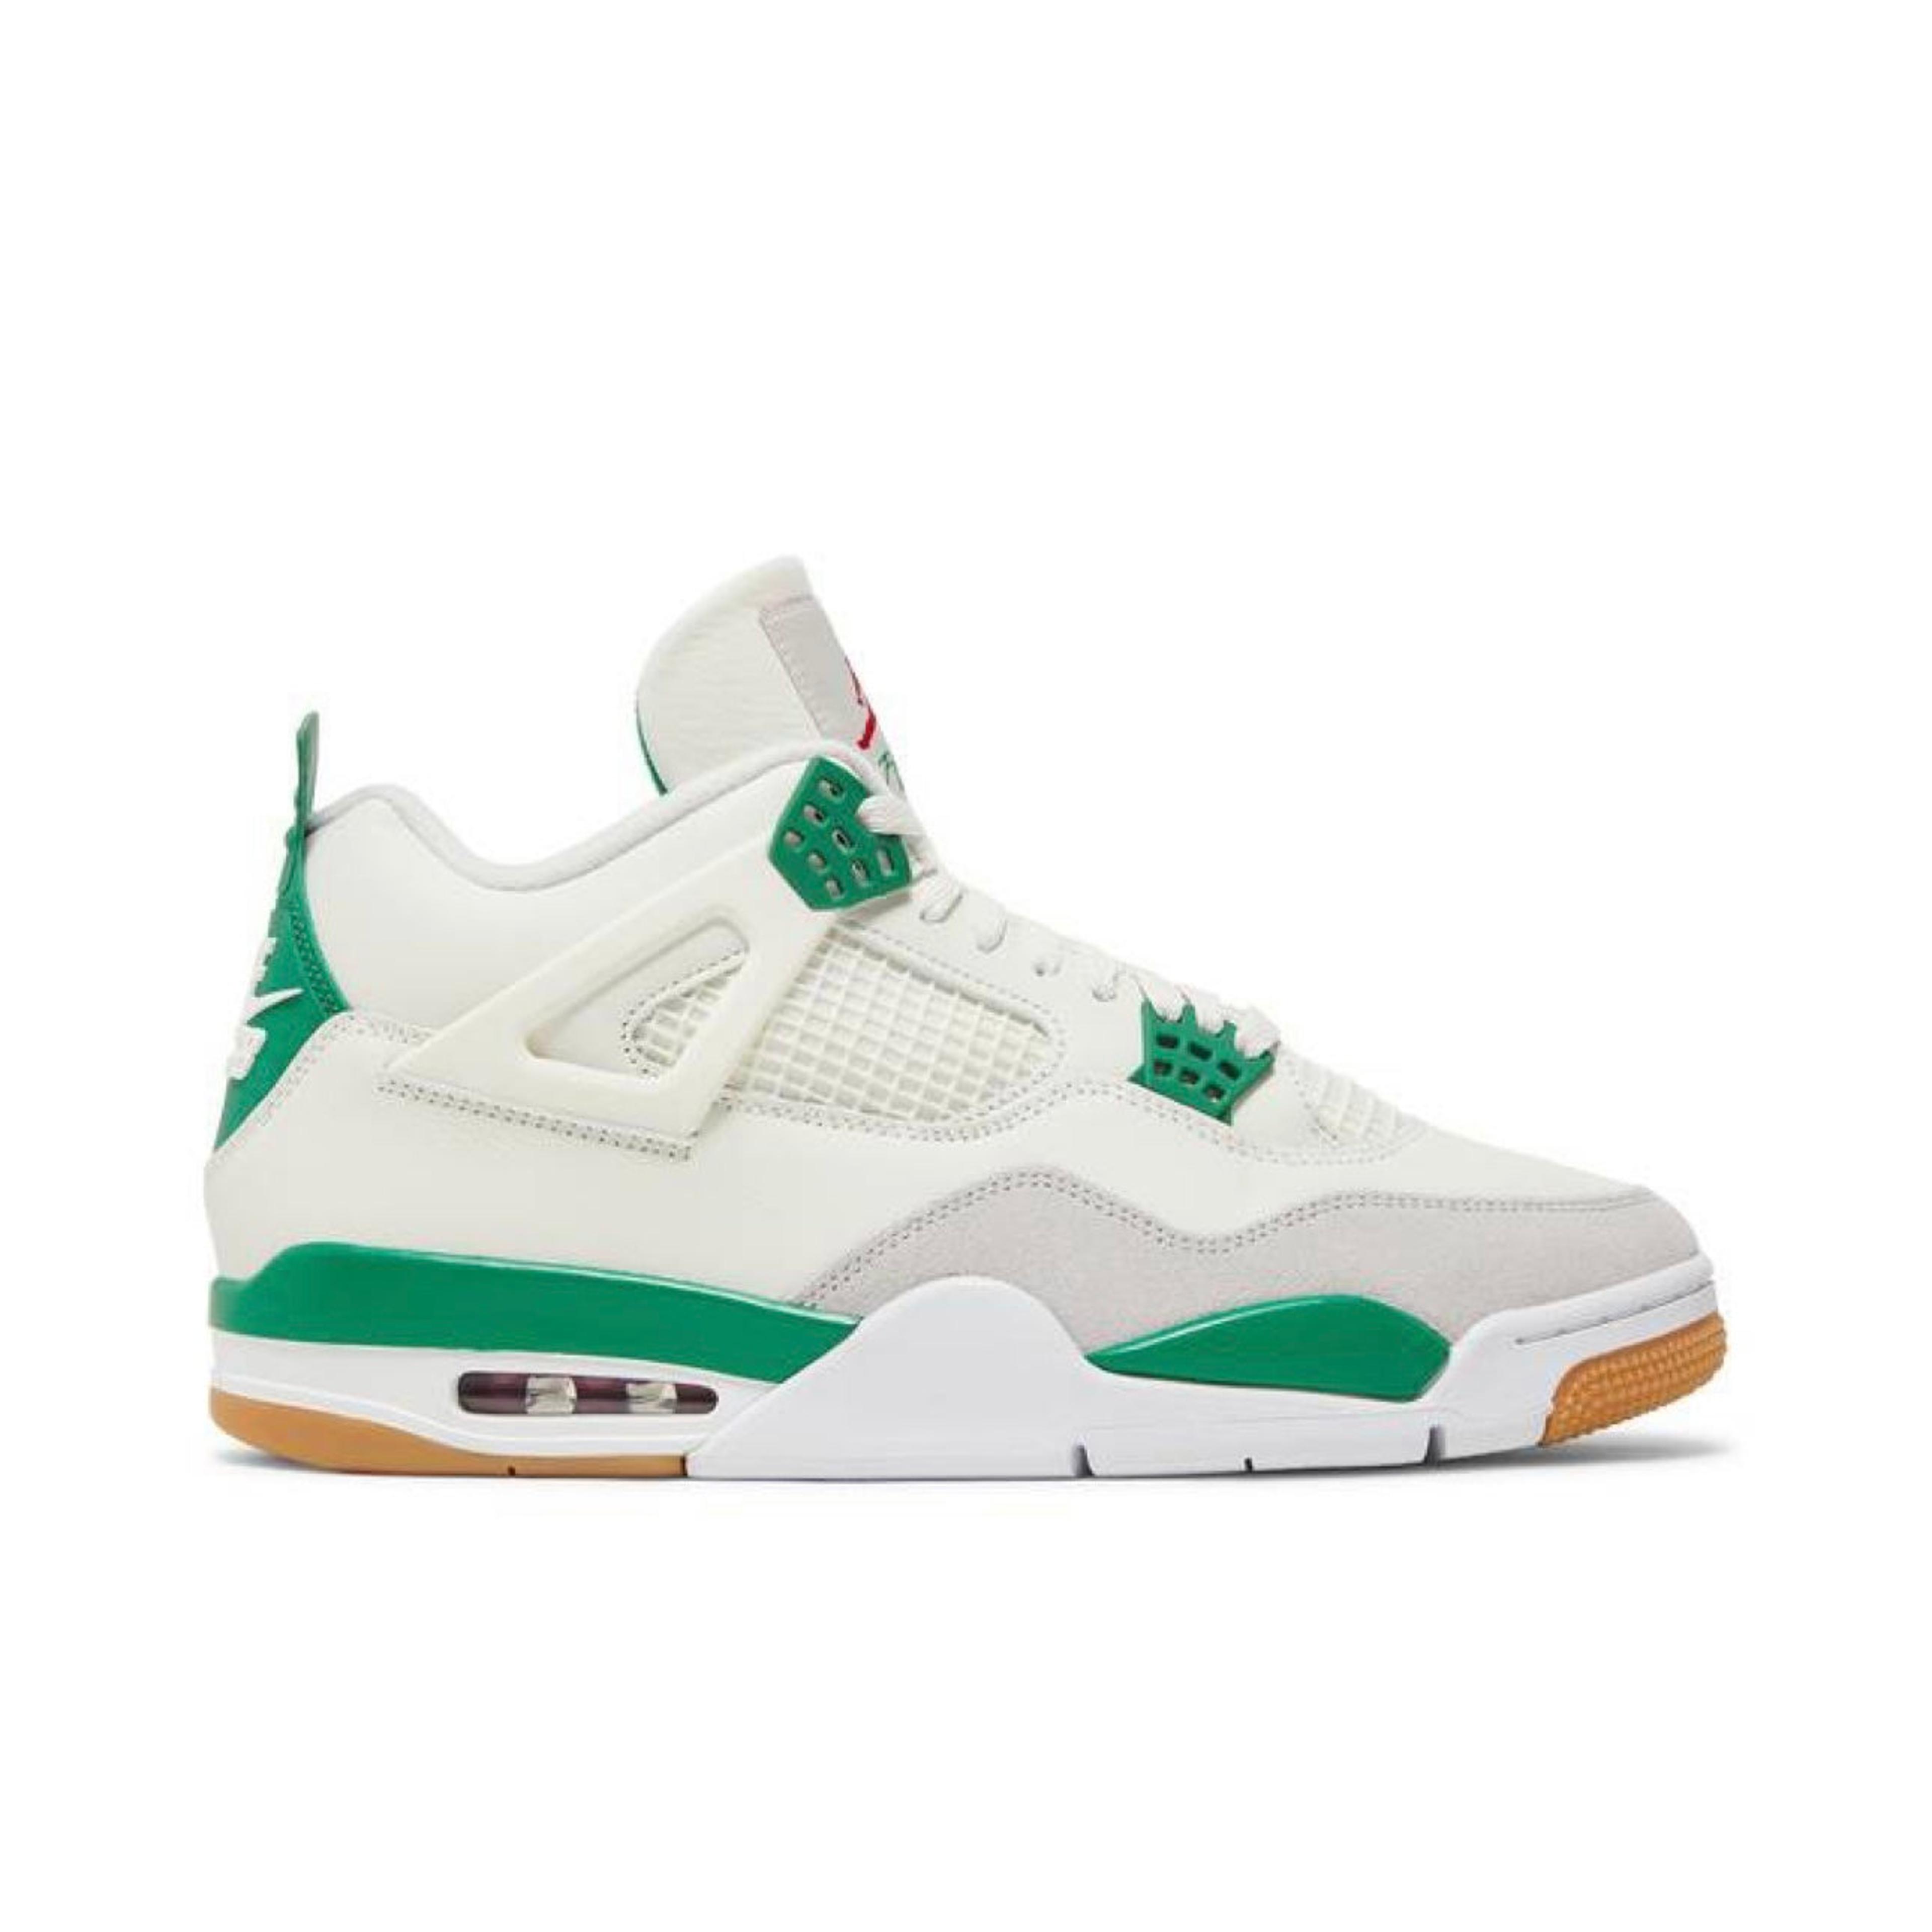 Air Jordan 4 SB ‘Pine Green’ (Men’s)